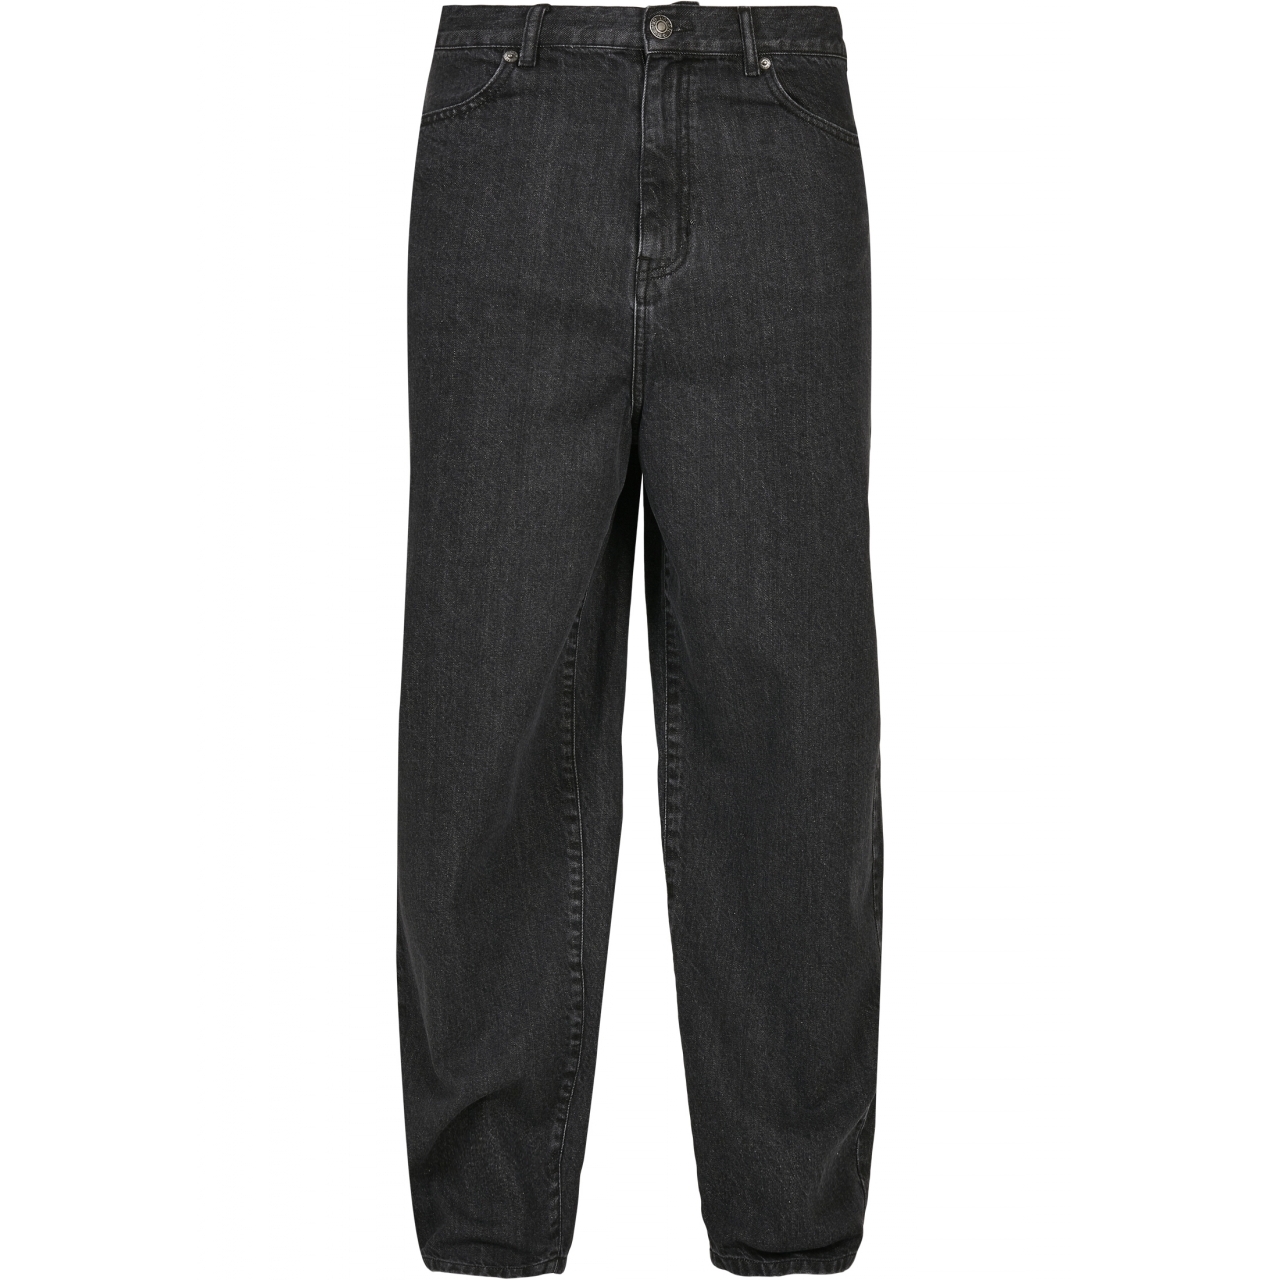 Džíny Urban Classics 90s Jeans - černé, 32